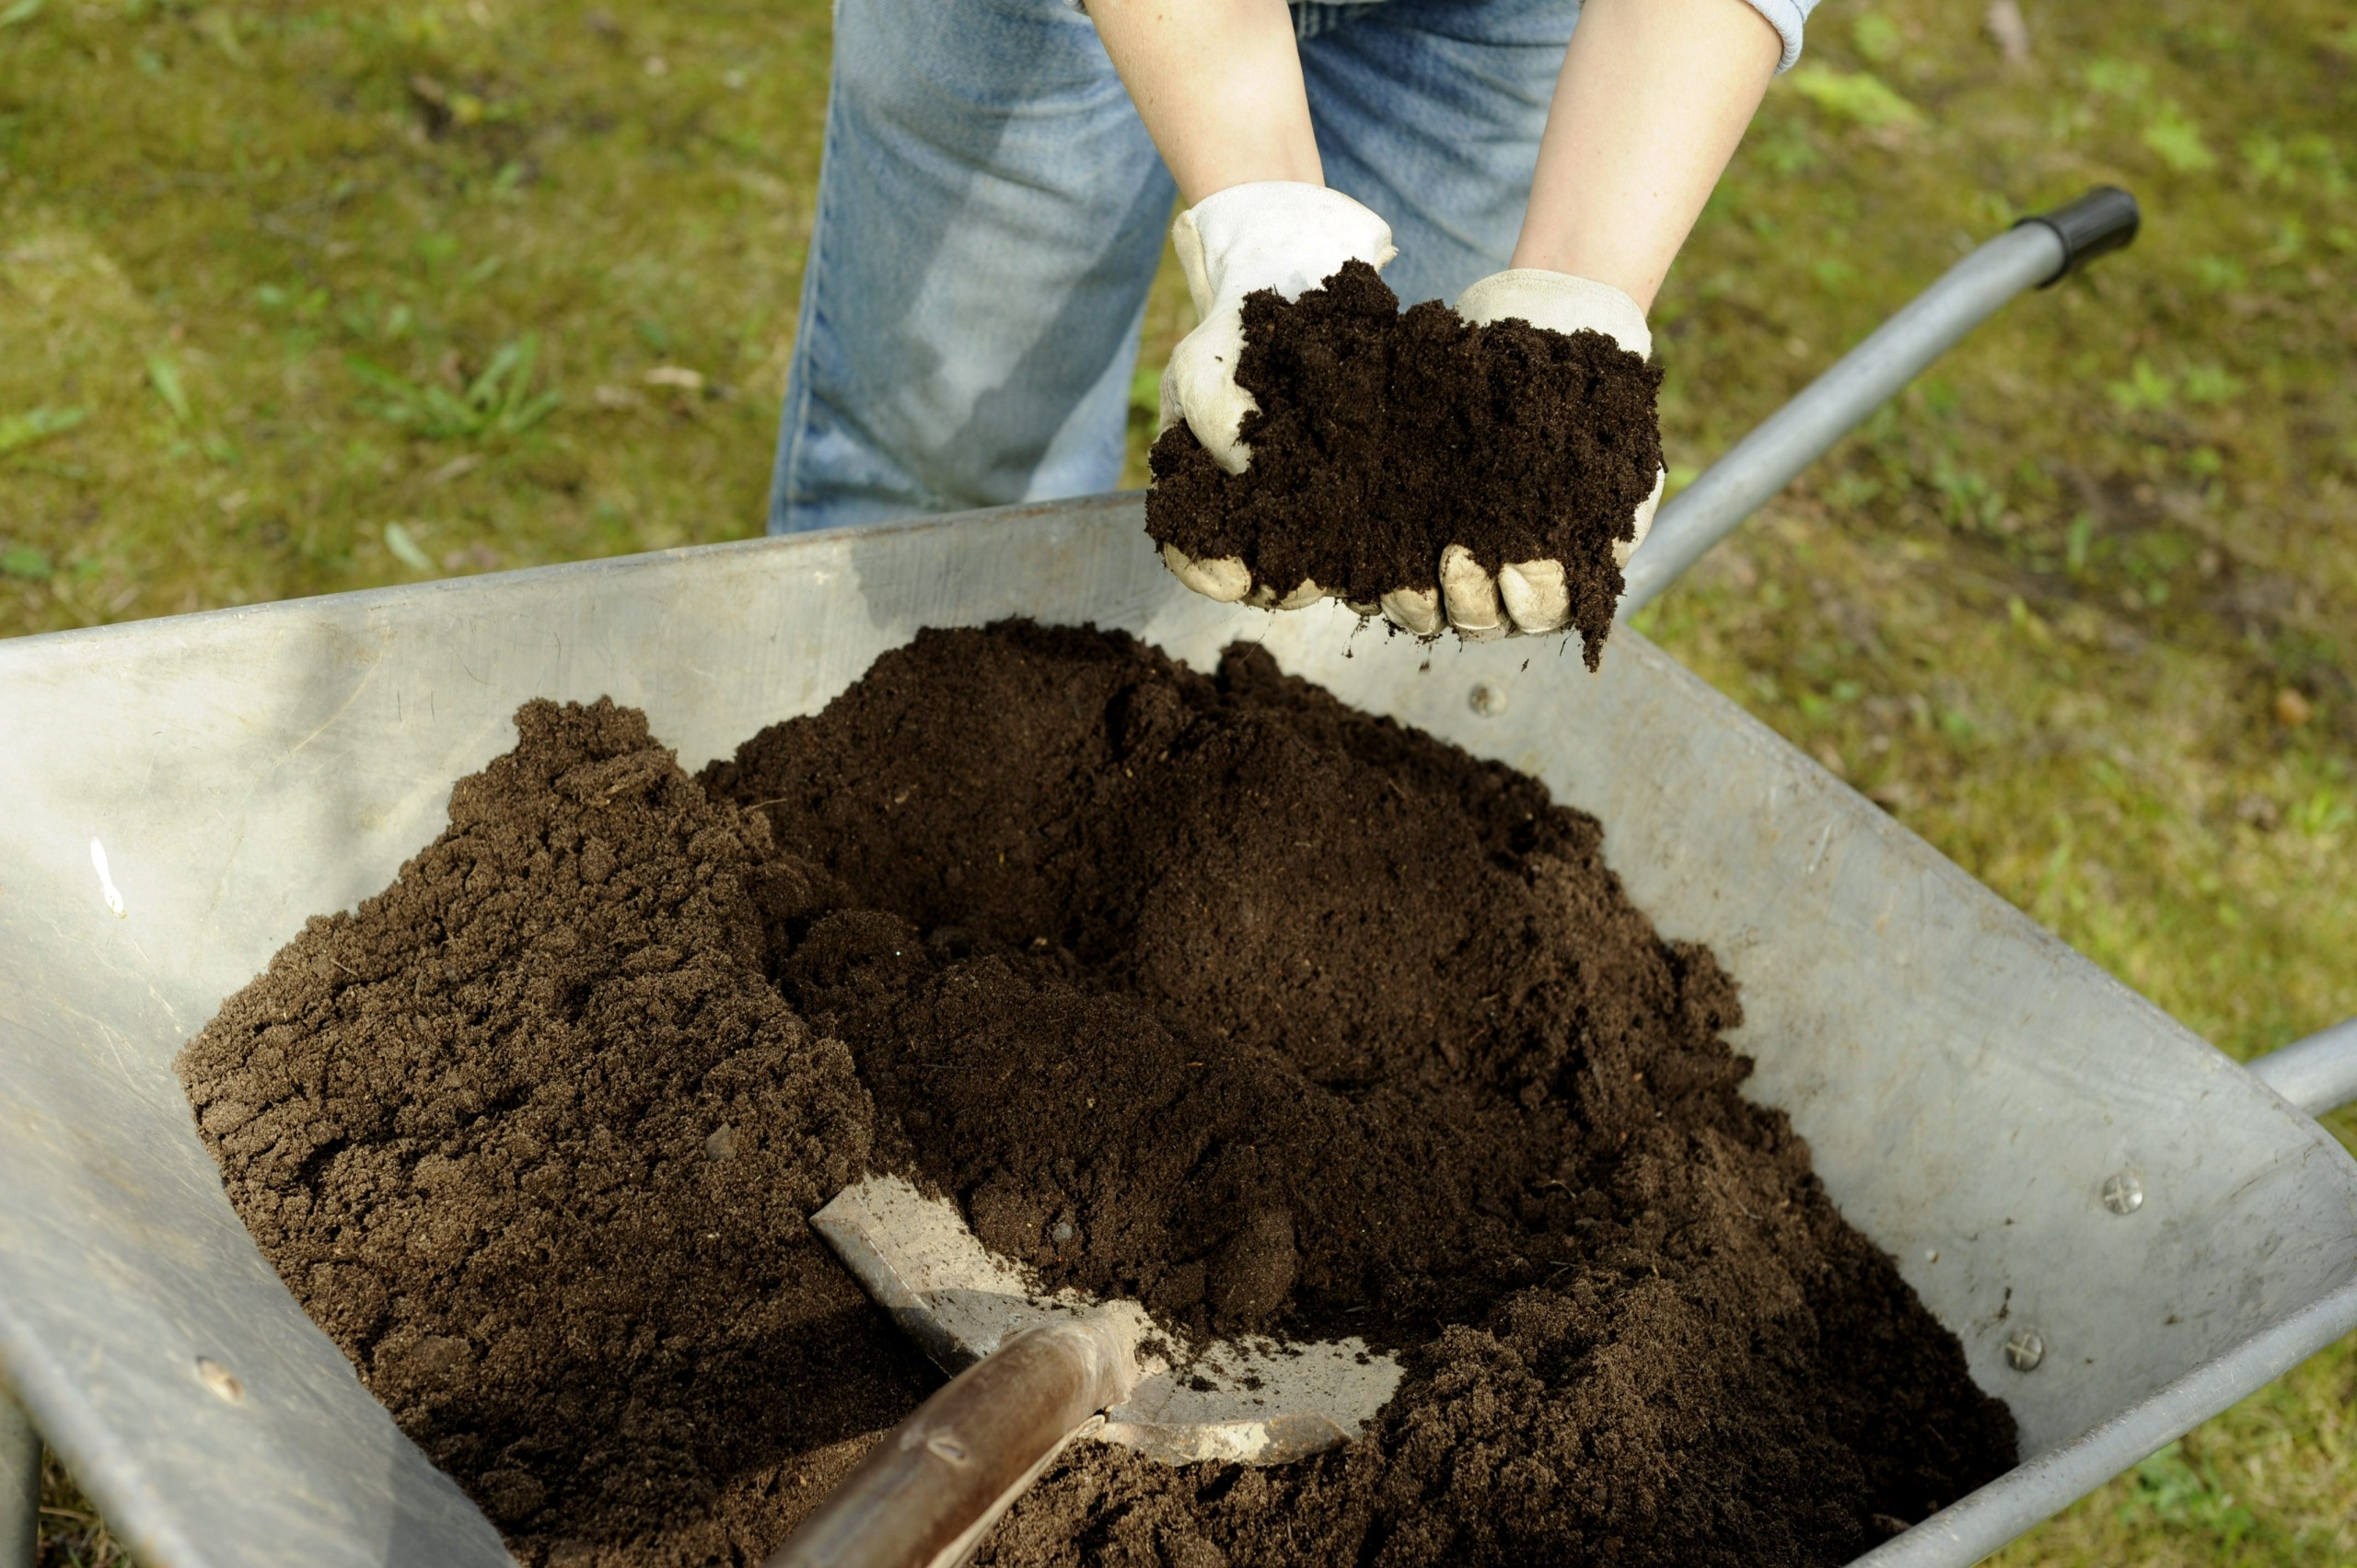 mullassa ja kompostituotteissa piilee riski legionellabakteerista, muistuttaa thl